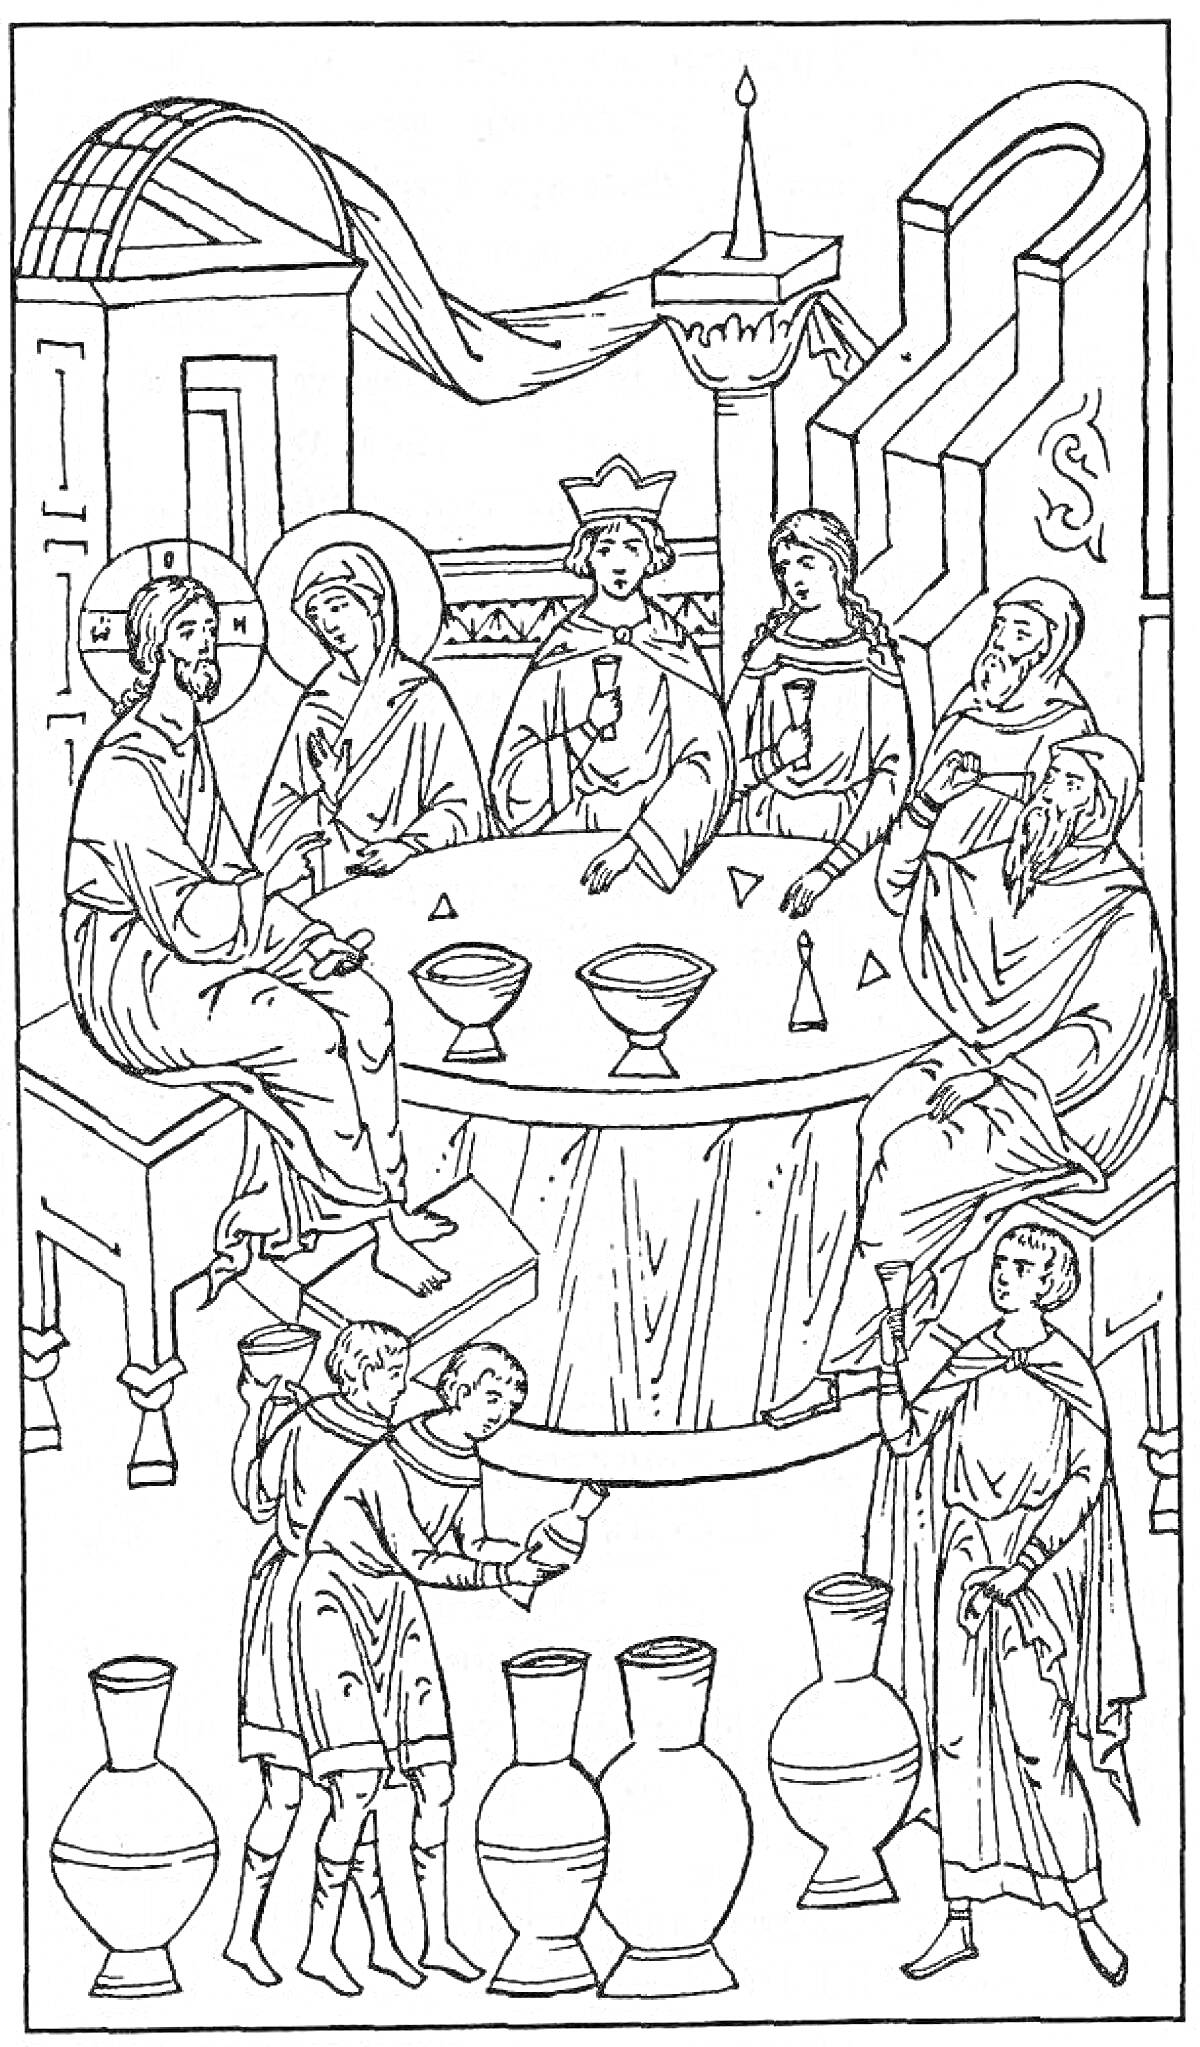 Пир в теремных палатах с участием нескольких людей, сидящих вокруг круглого стола, три сосуда, несколько человек стоят